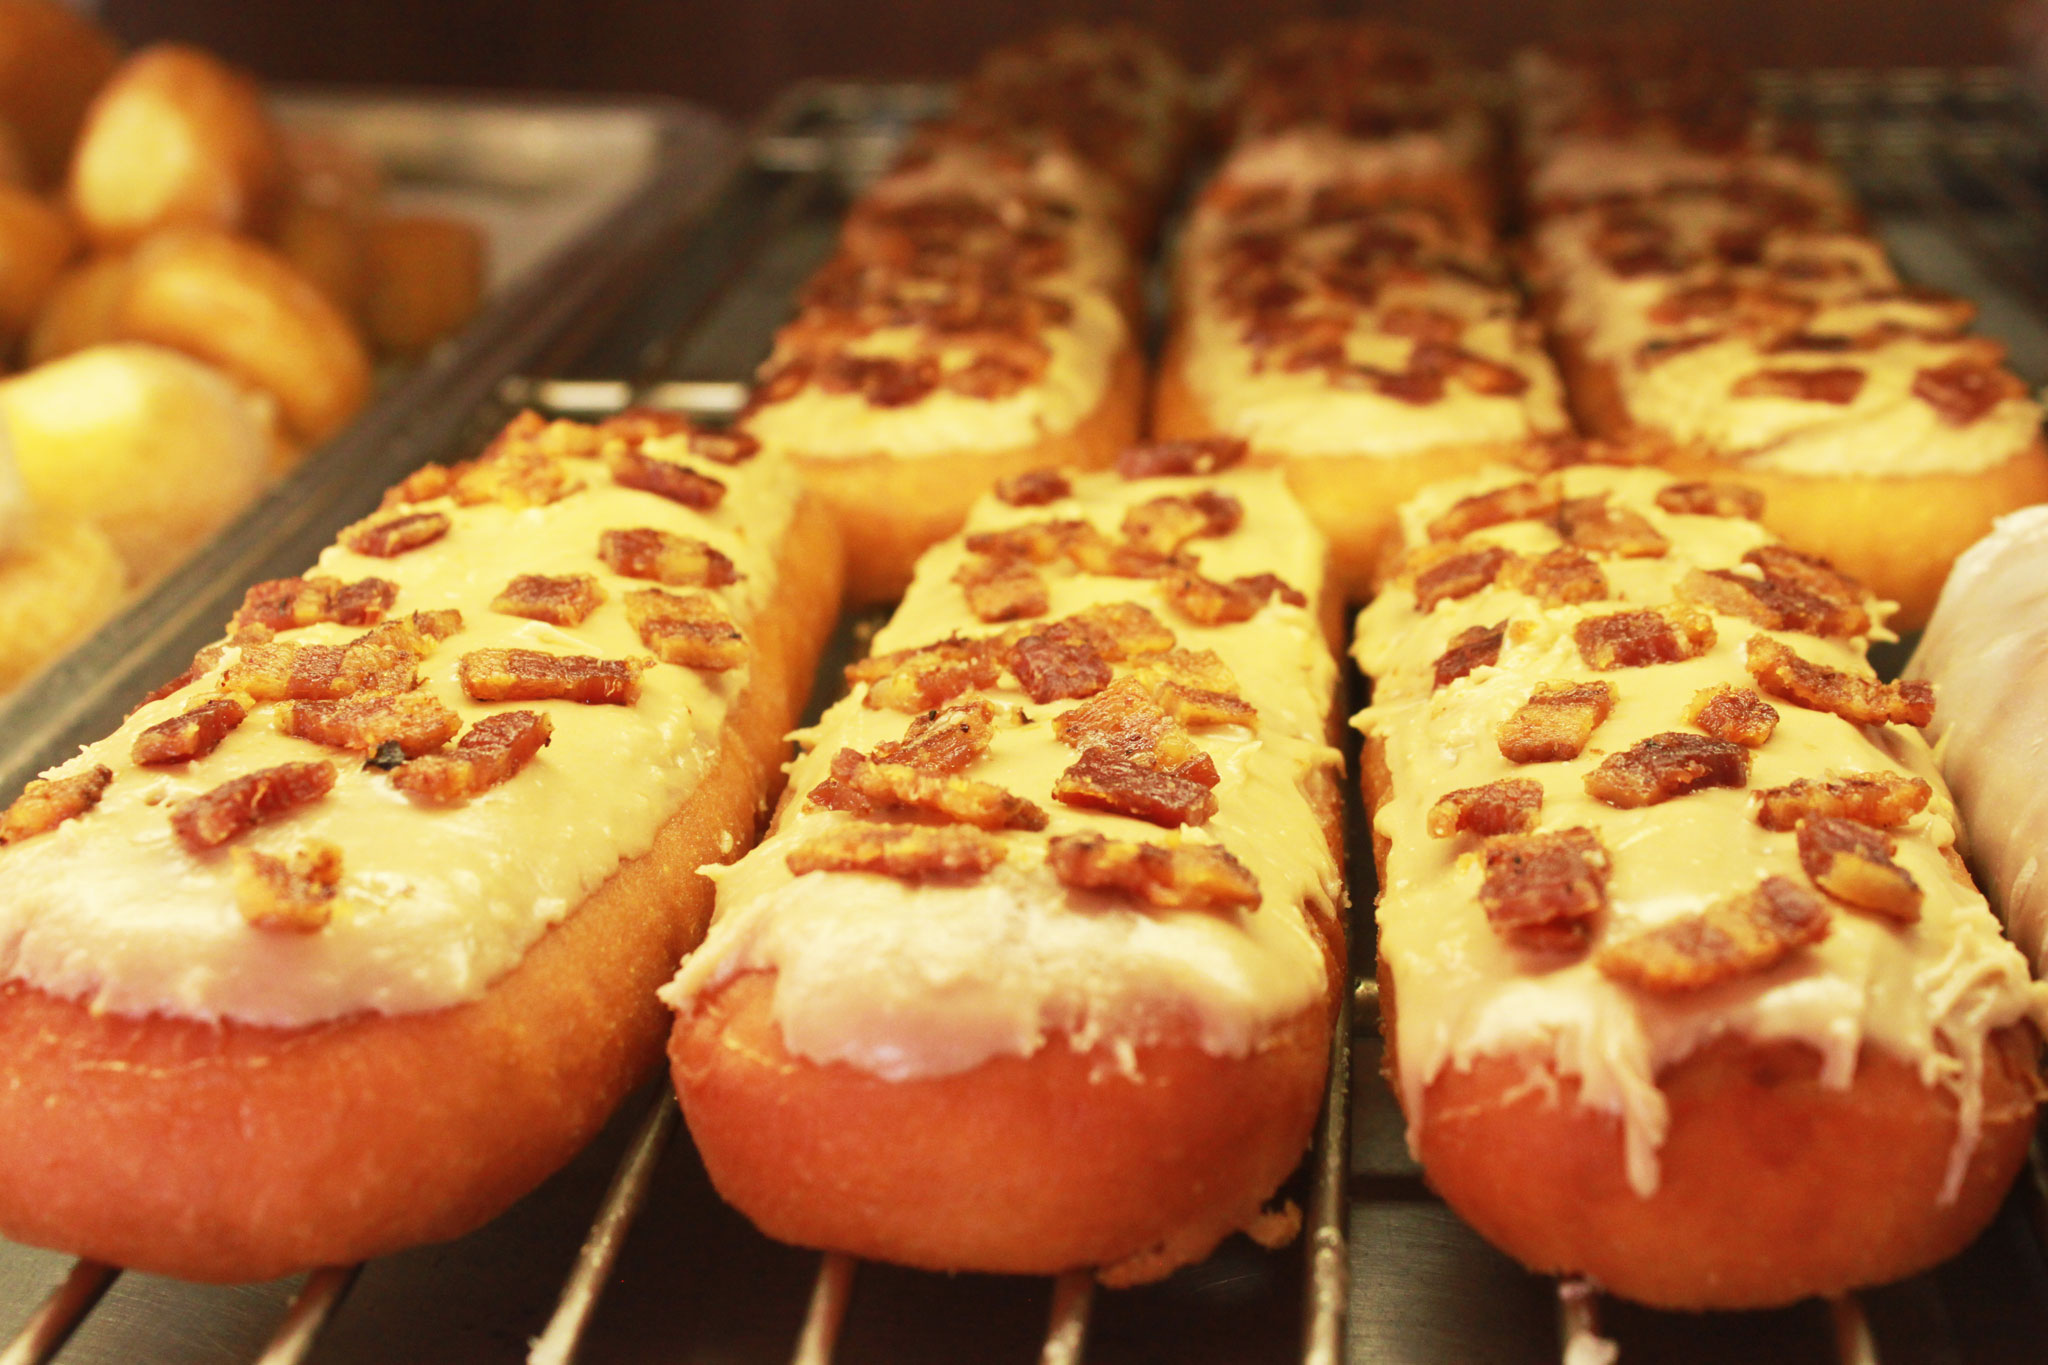 Maple Bacon Glazed Long Johns at Alvernon Donut Shop